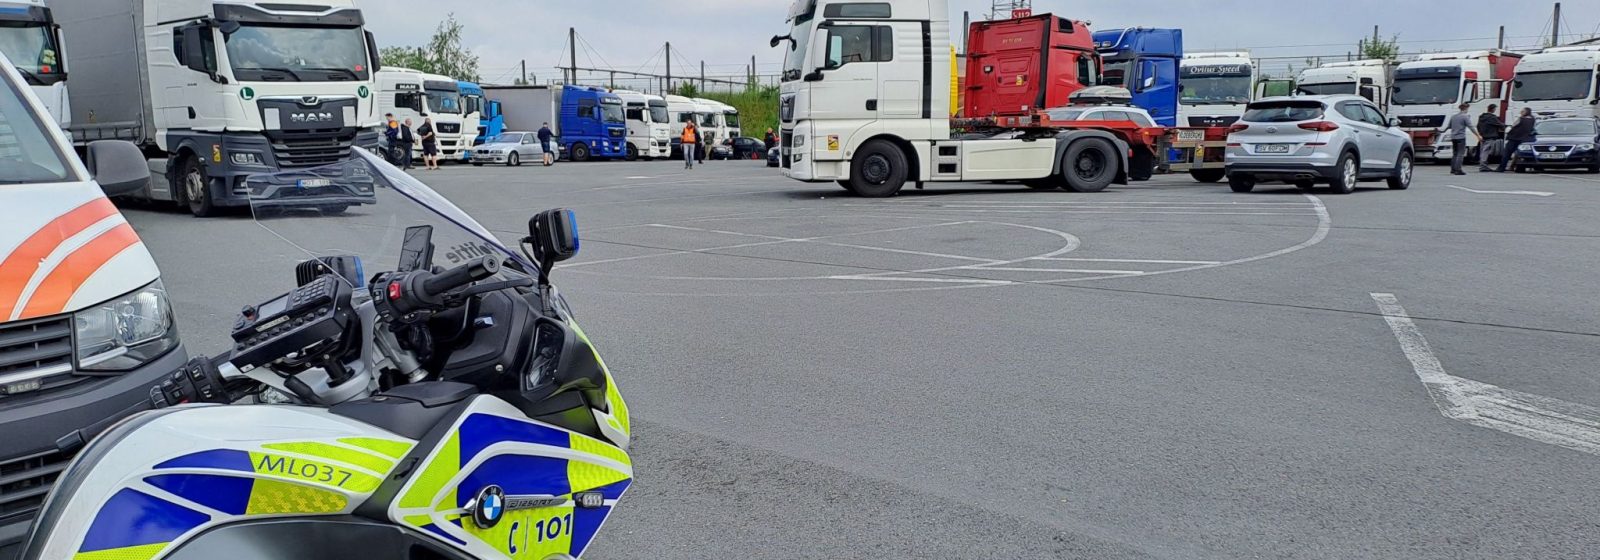 Controleactie op vrachtwagenparking Goordijk in de Antwerpse haven